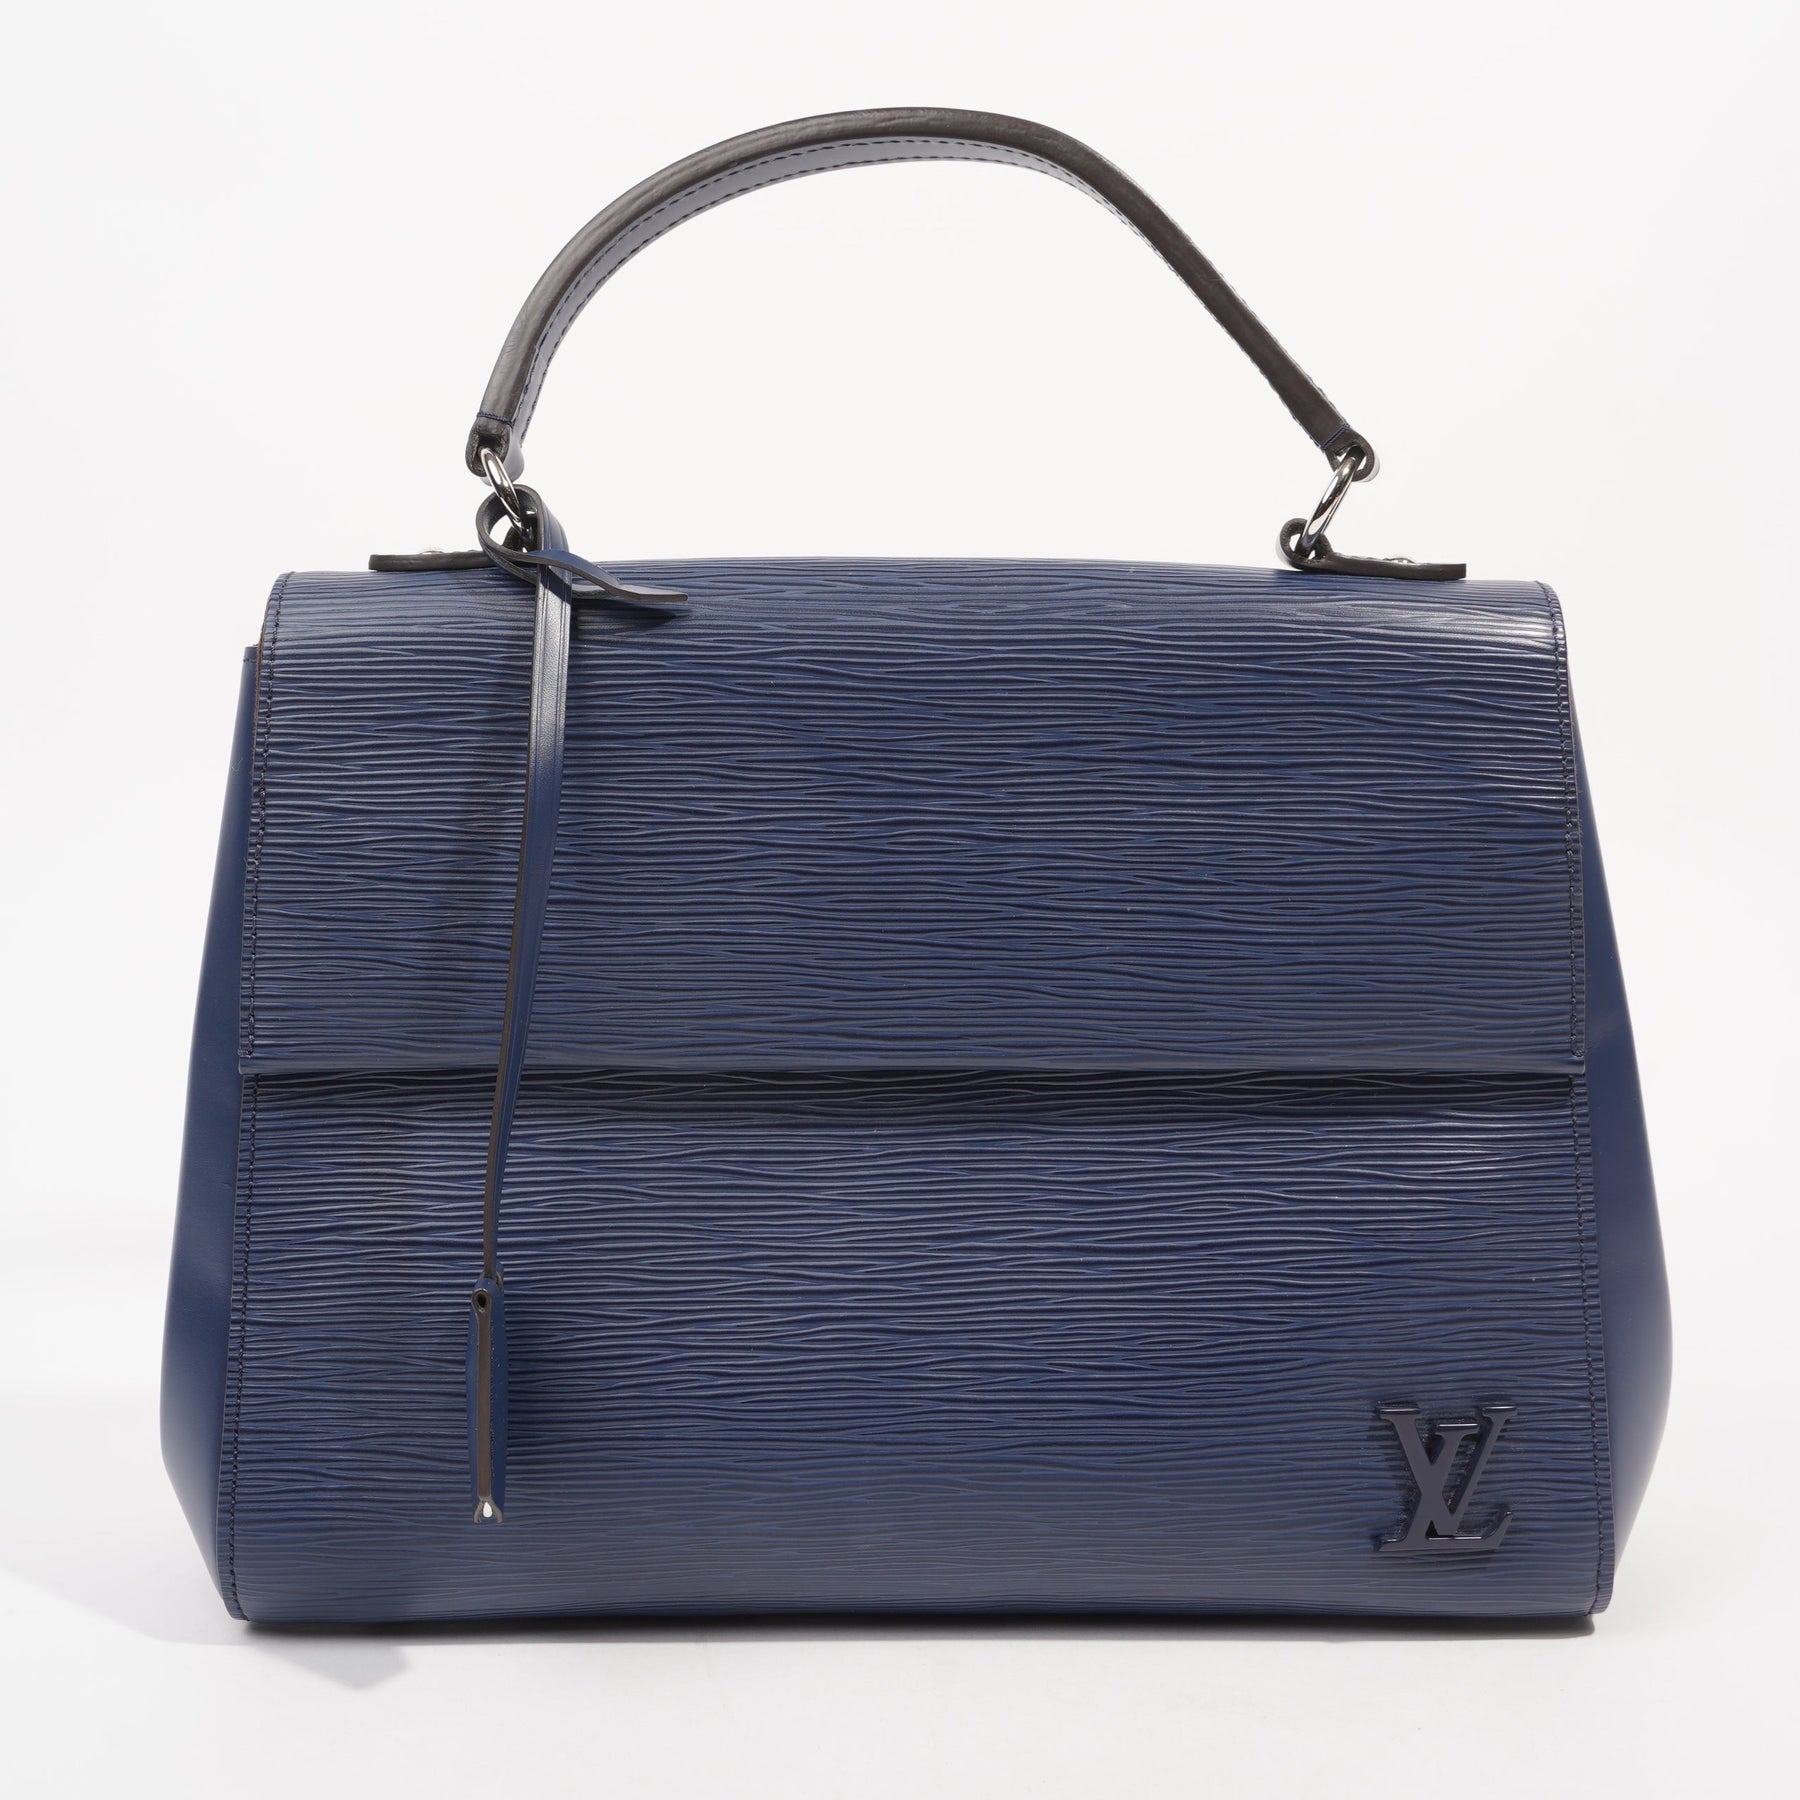 LOUIS VUITTON Louis Vuitton Louis Vuitton Cluny bag in light blue epi